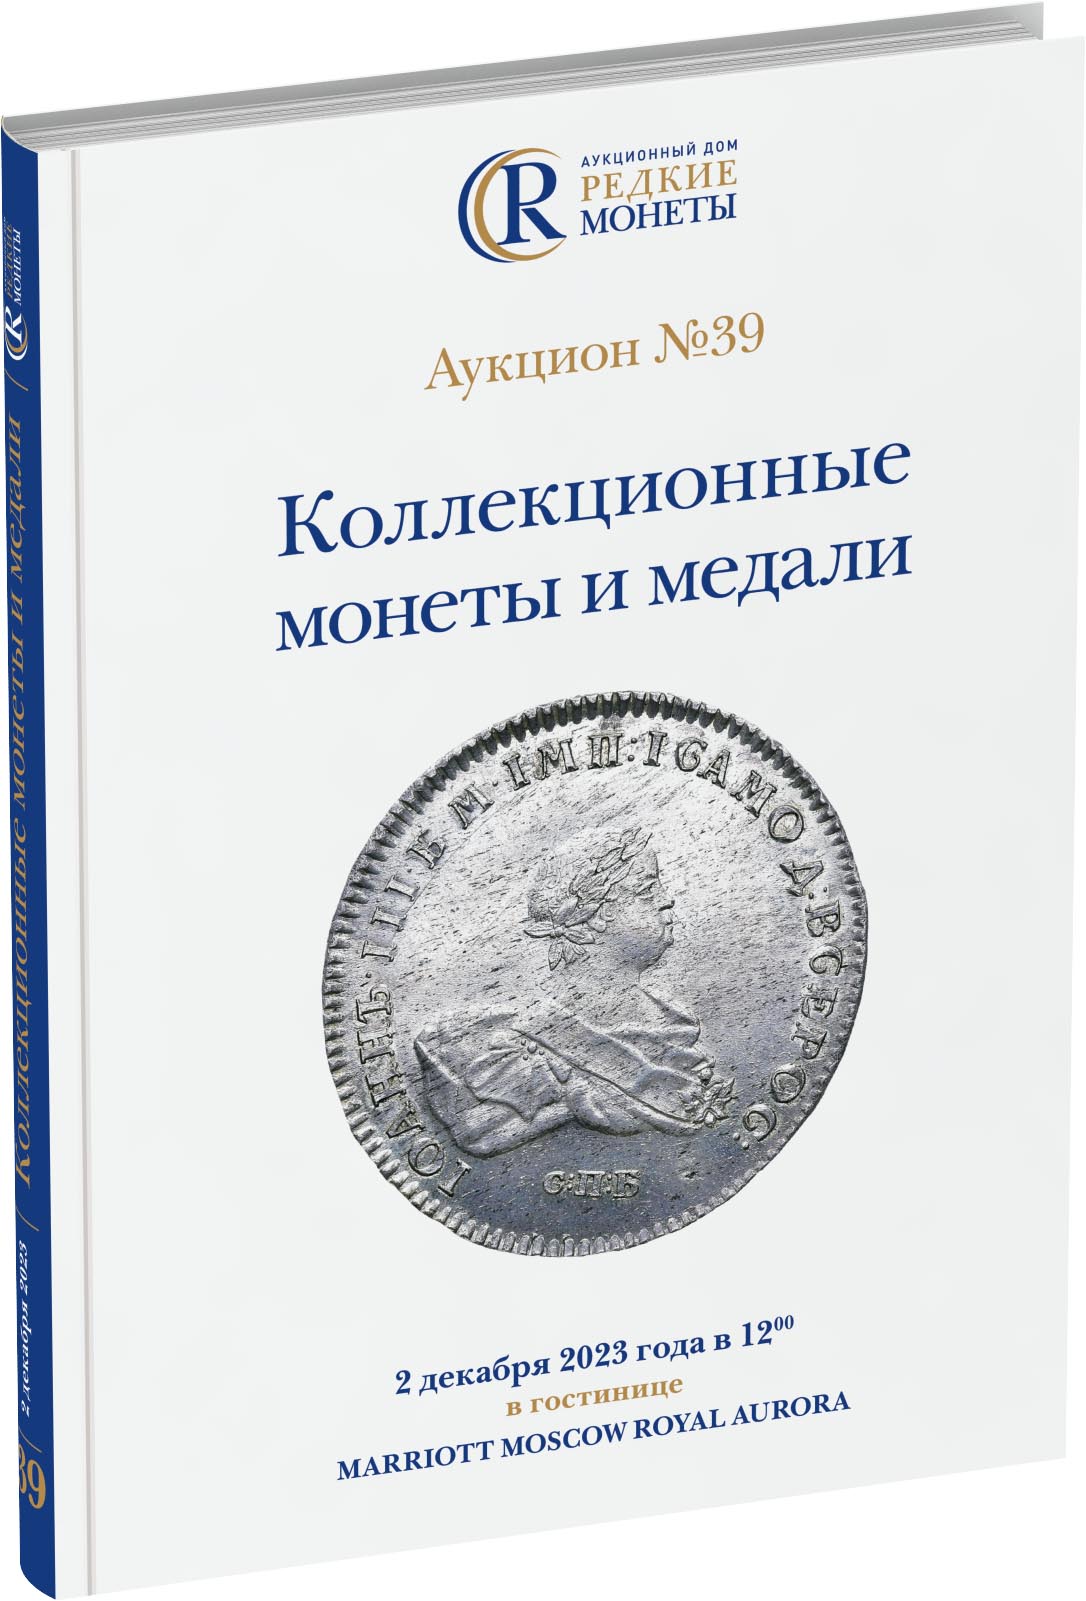 Обложка издания Каталог аукциона №39 «Коллекционные монеты и медали»